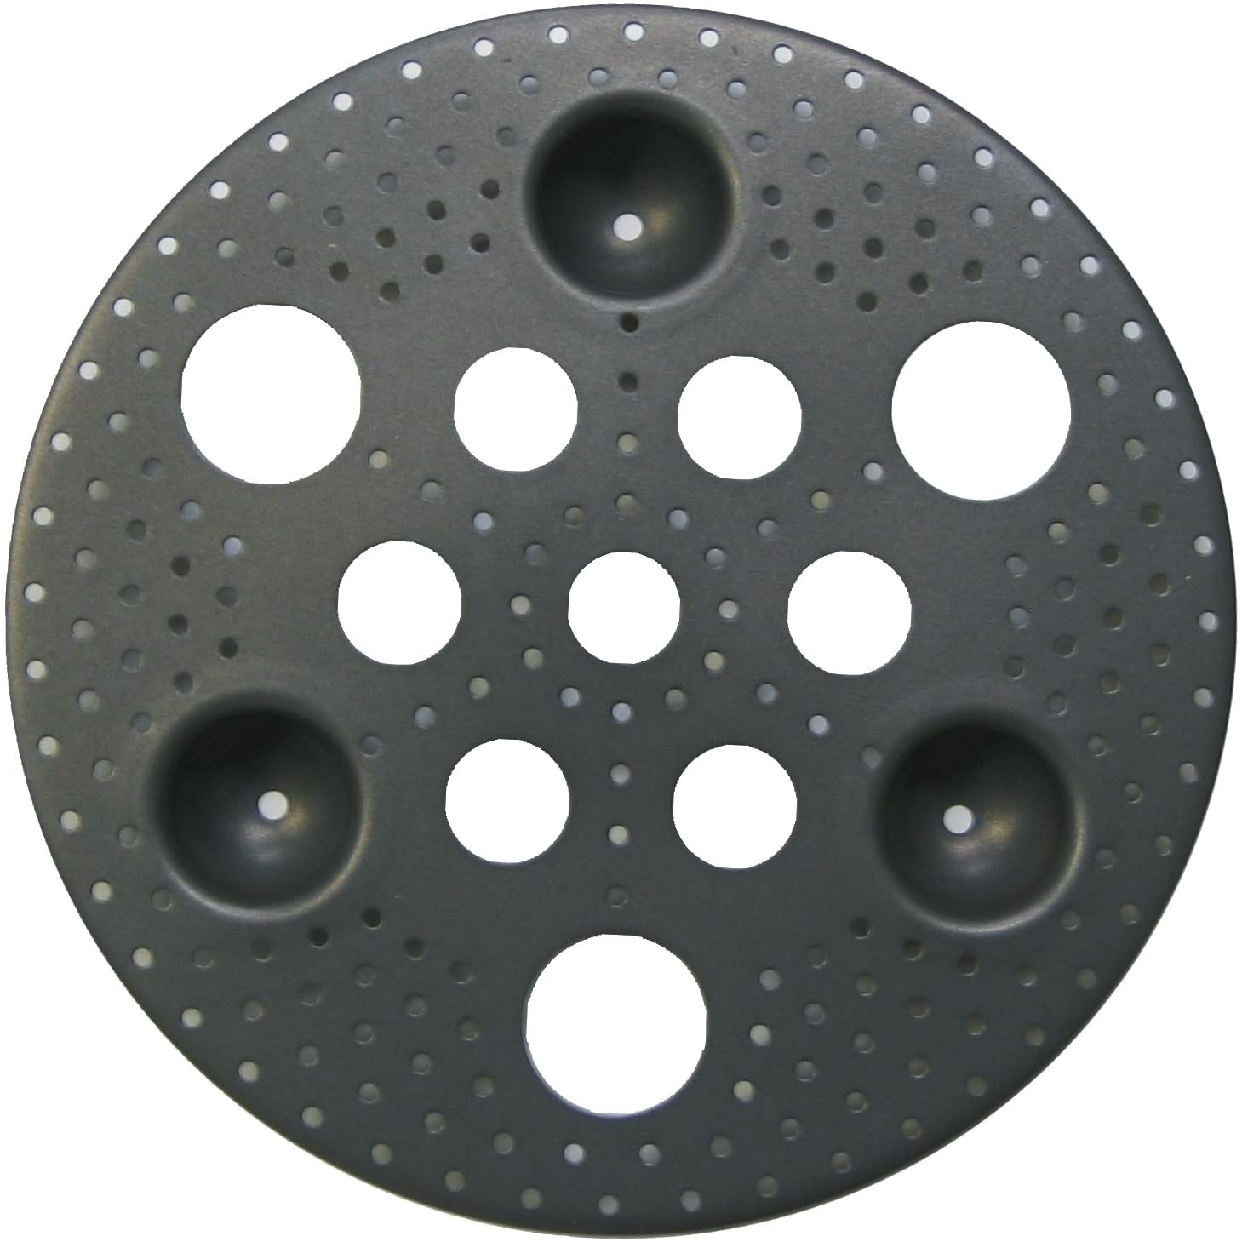 ウルシヤマ金属(ウルシヤマキンゾク) 便利プレート フライパンで簡単蒸し調理 ブラックの商品画像サムネ1 